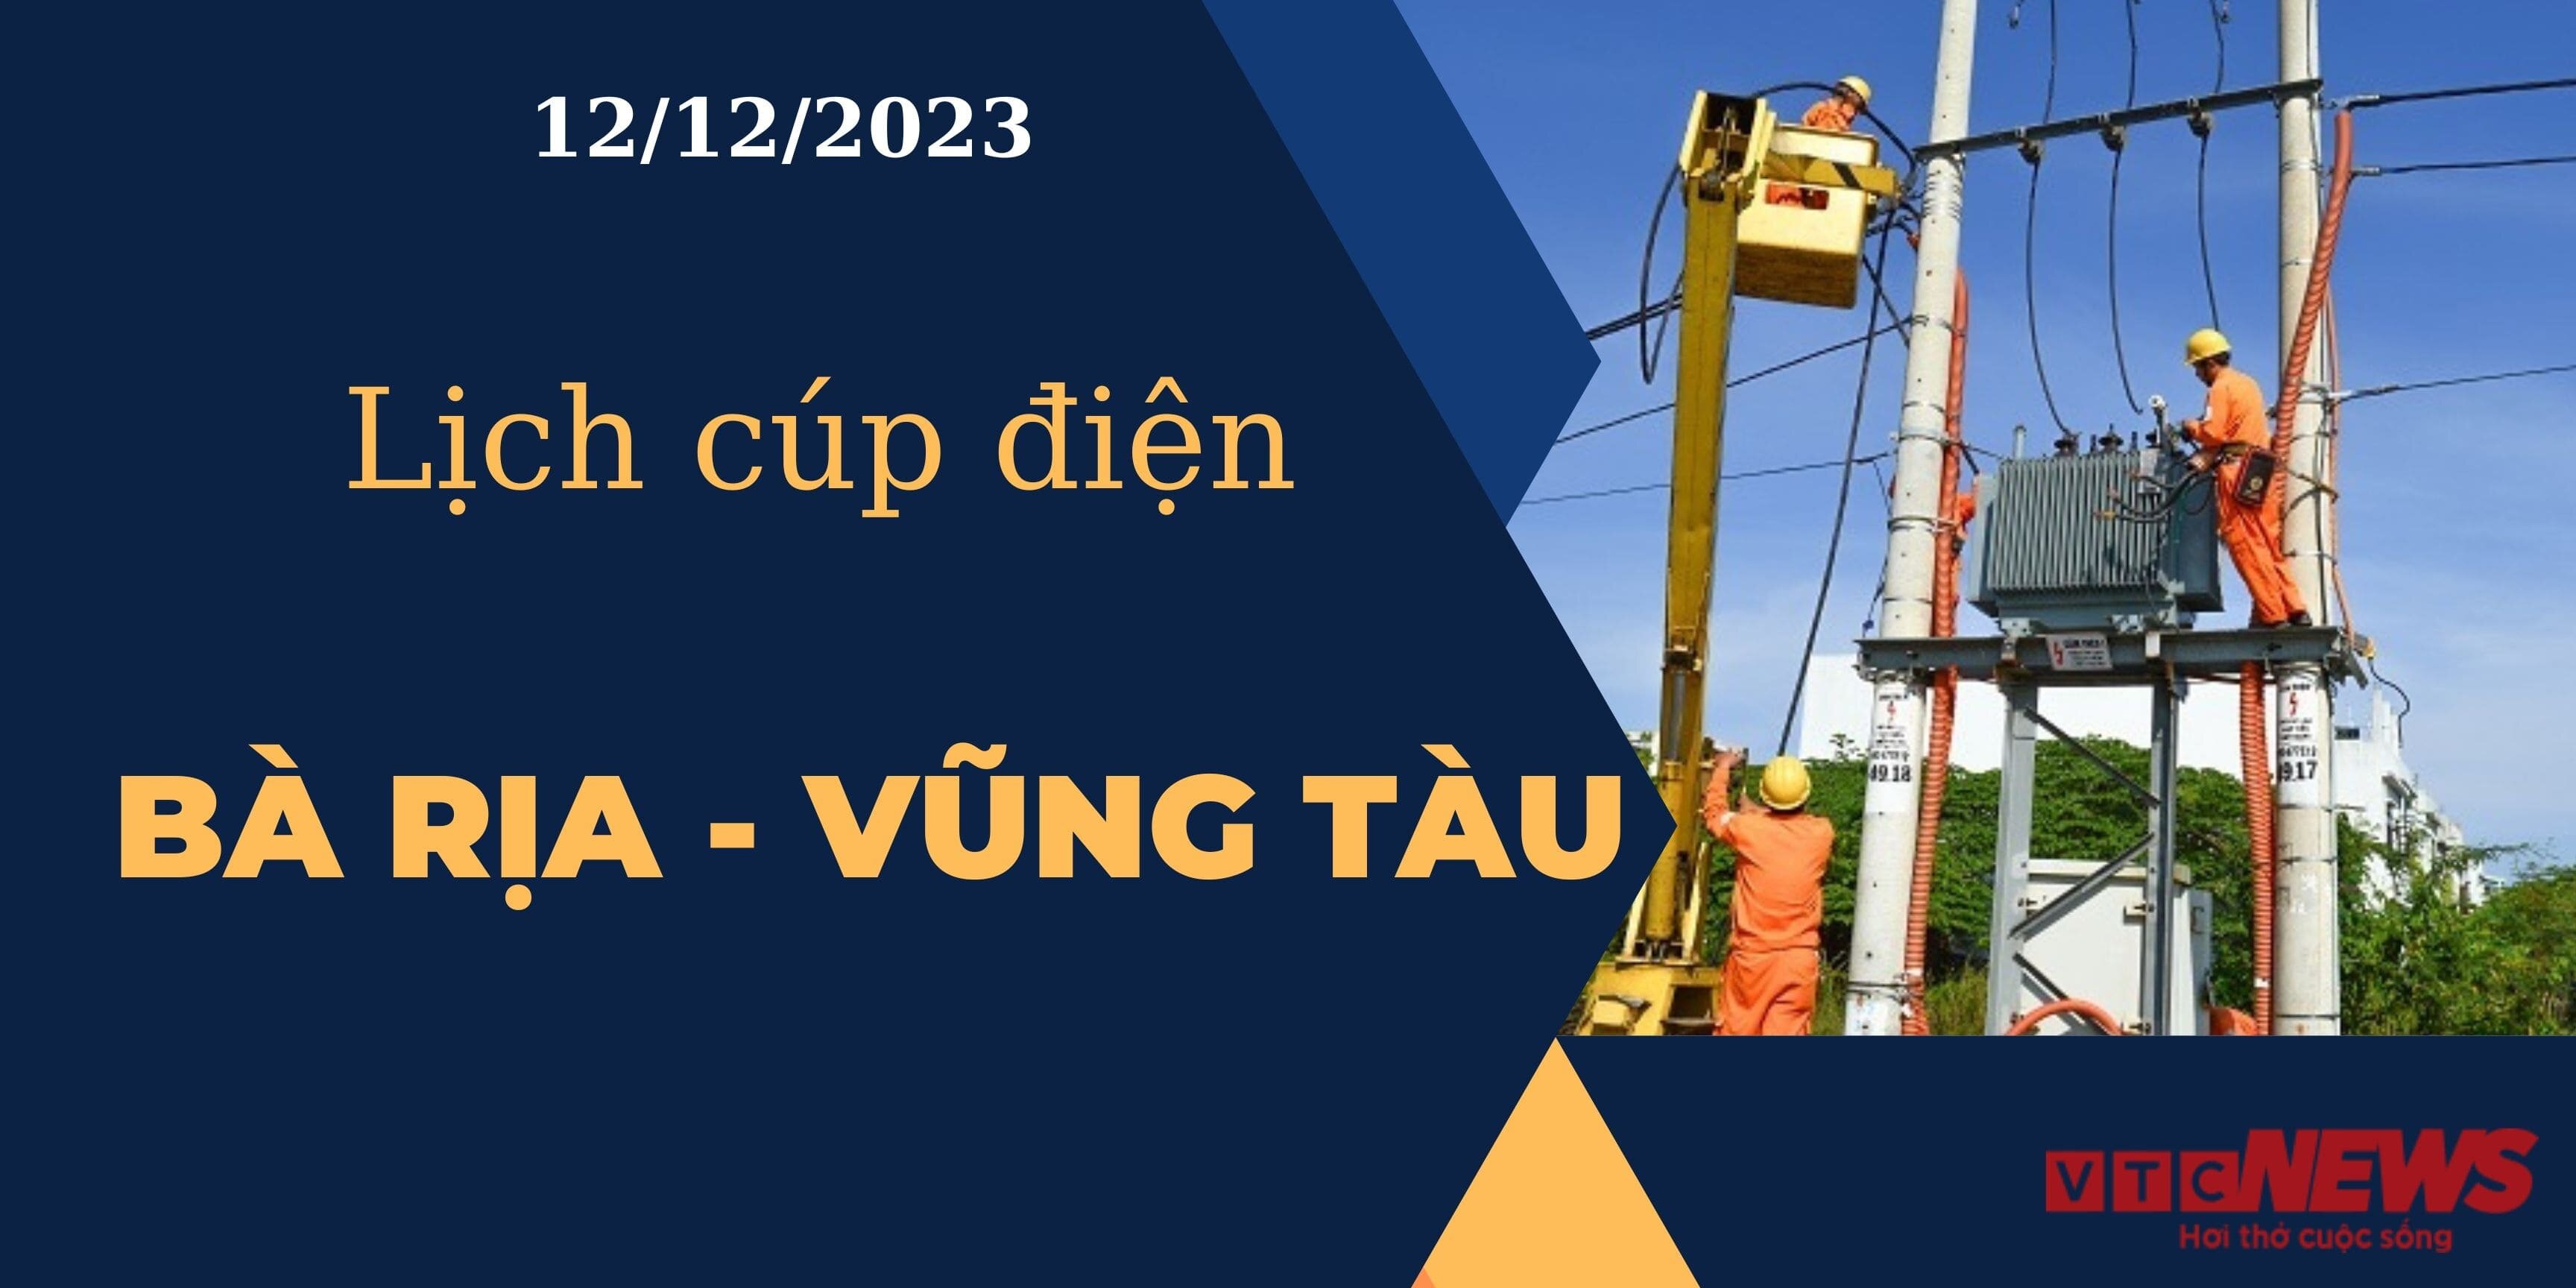 Lịch cúp điện hôm nay tại Bà Rịa - Vũng Tàu ngày 12/12/2023